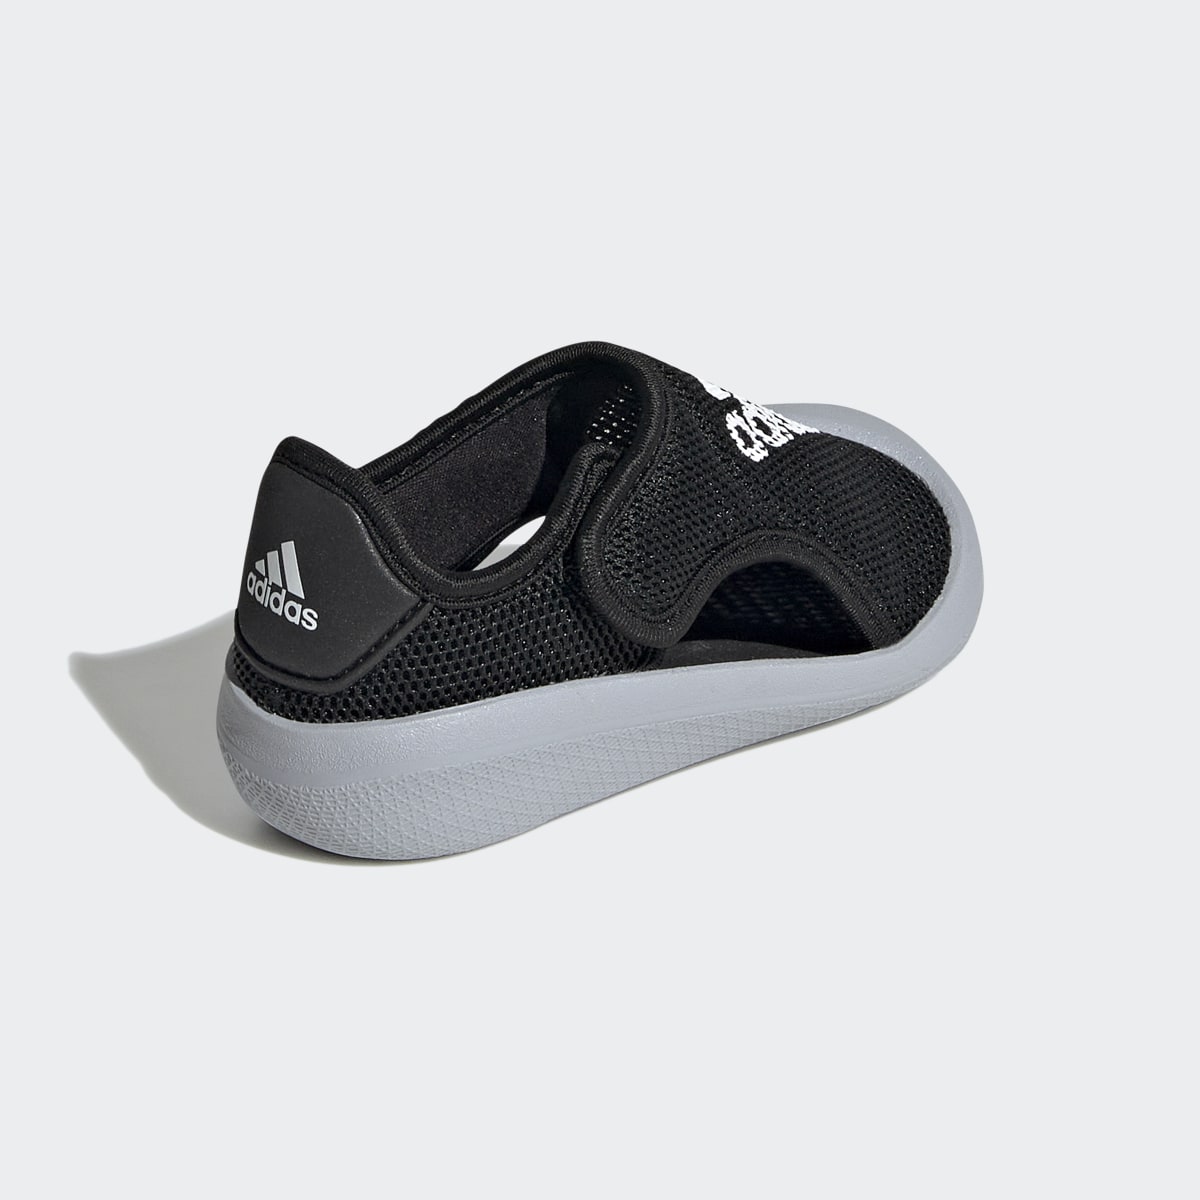 Adidas Altaventure Sport Swim Sandals. 6